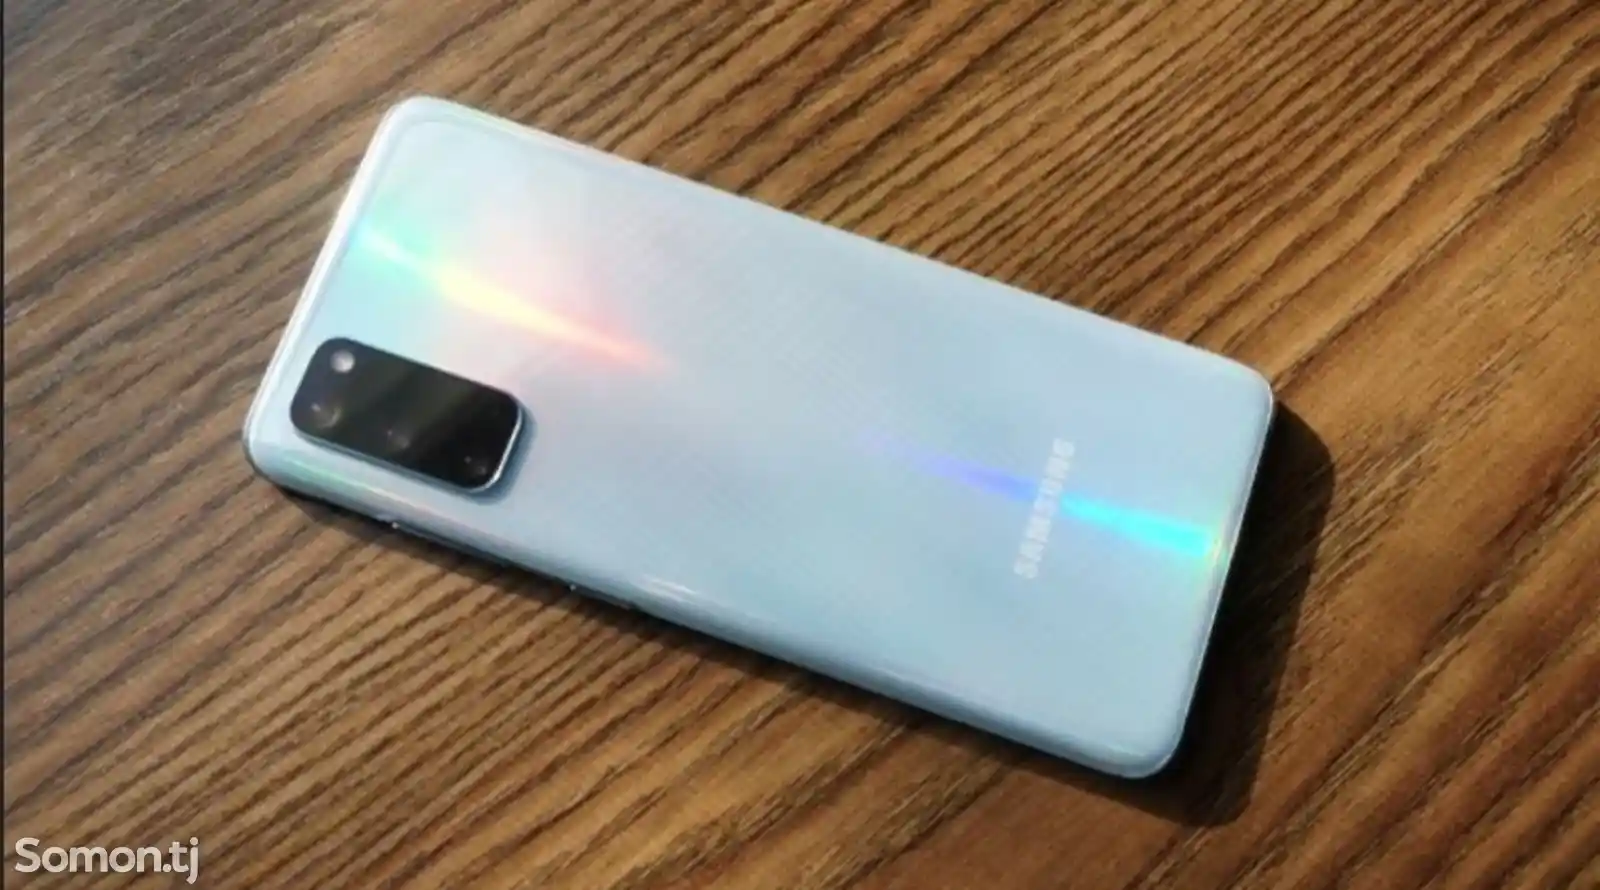 Samsung Galaxy S20-1